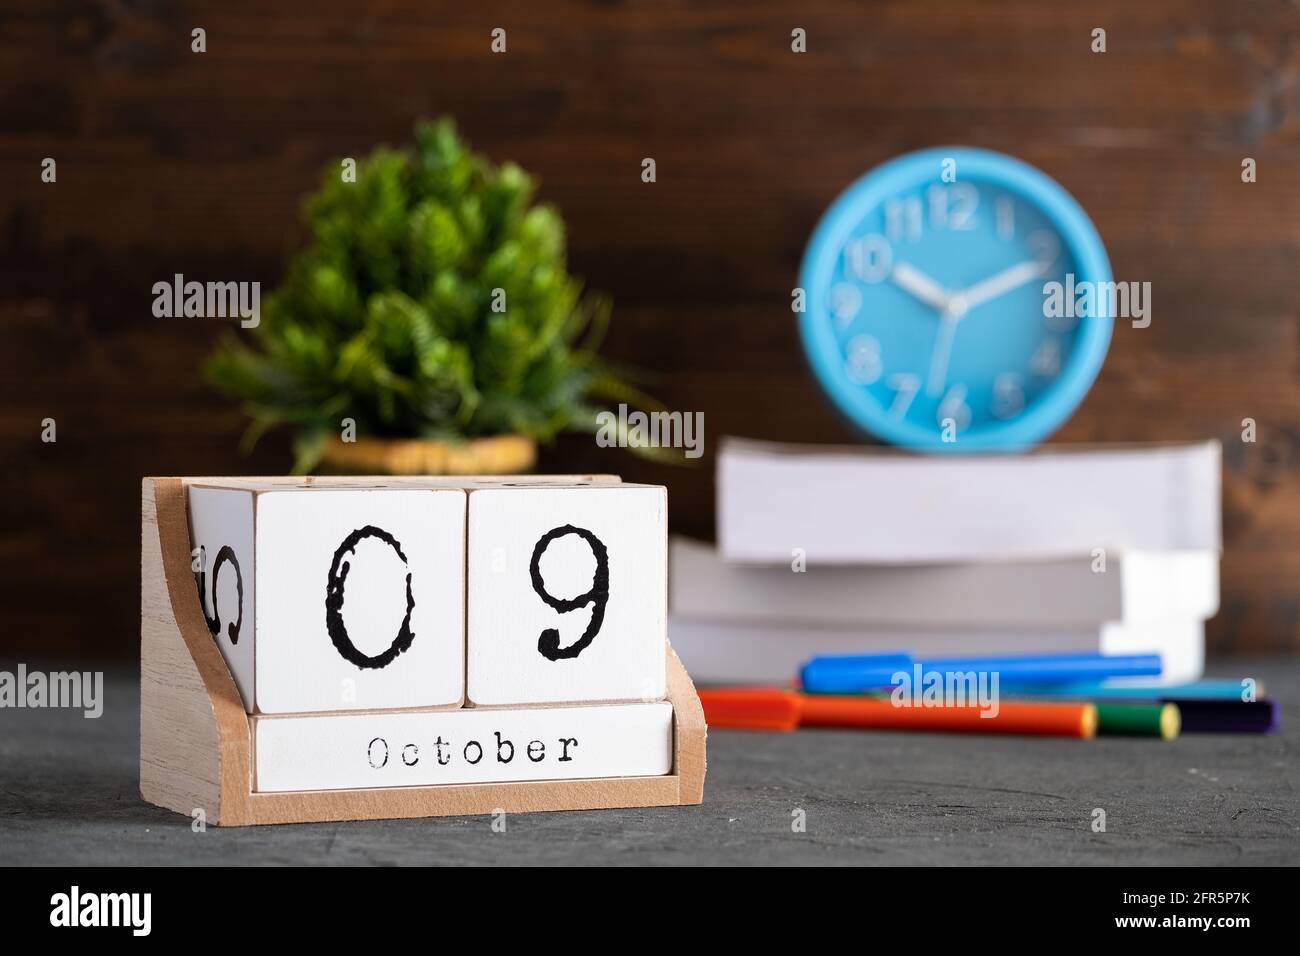 Le 09 octobre. Octobre 09 calendrier cube en bois avec objets flous sur fond. Banque D'Images